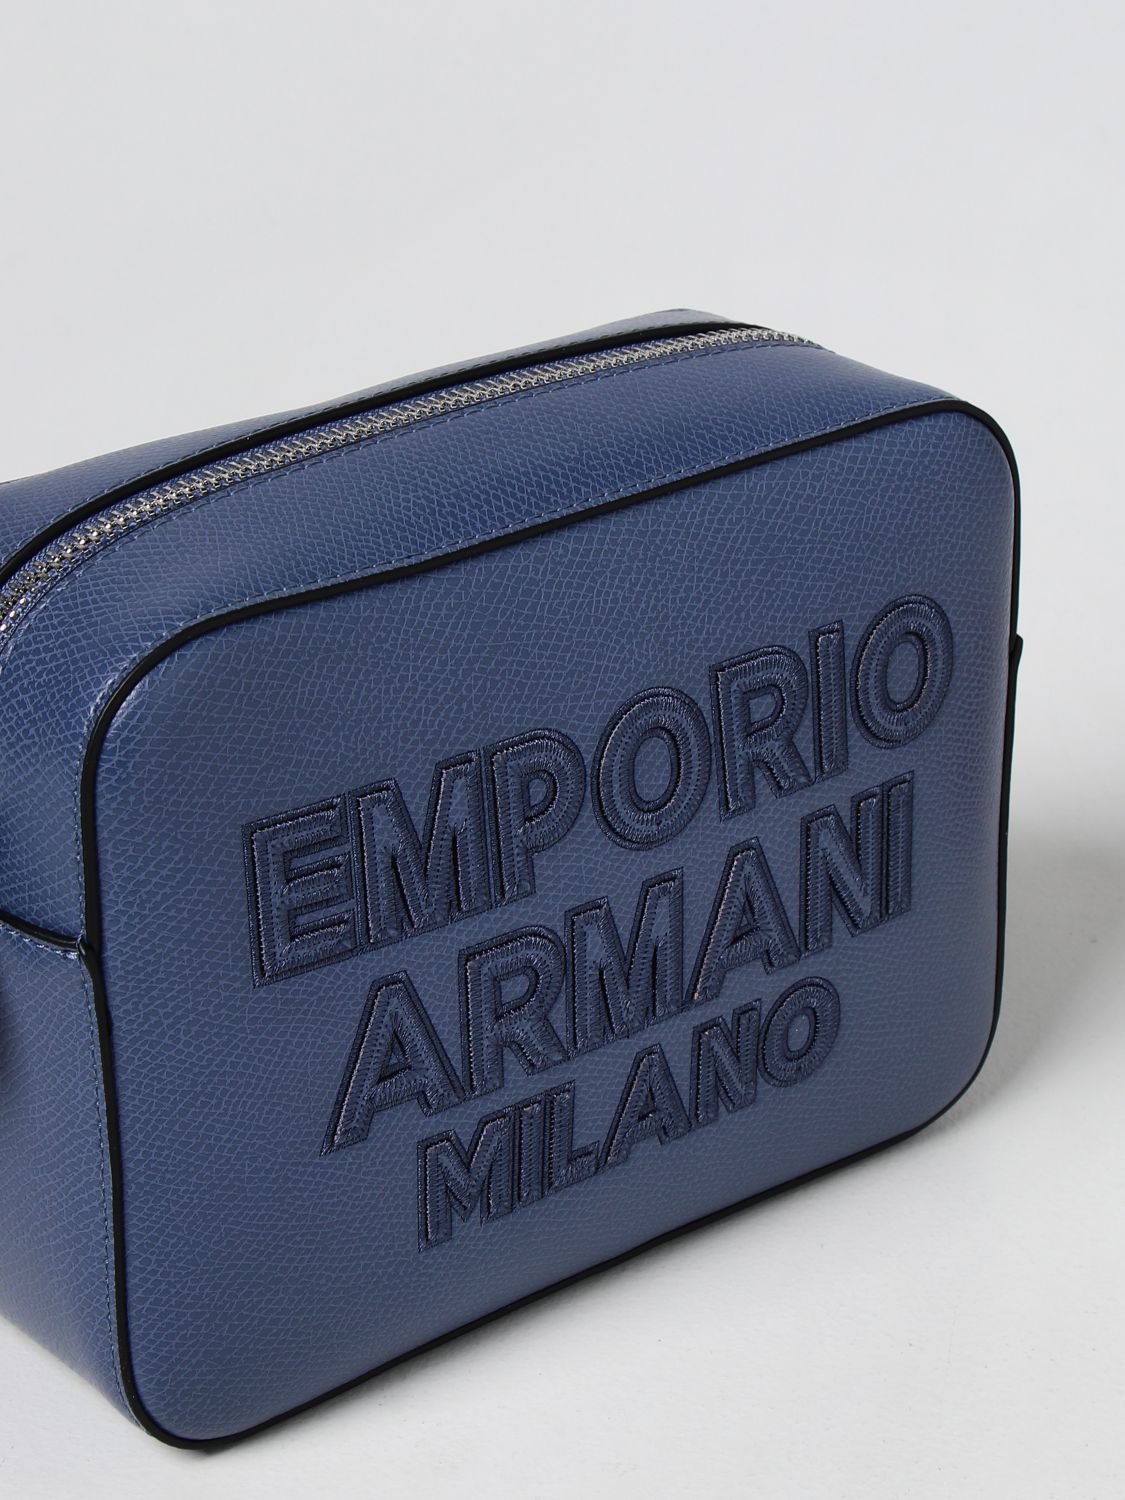 Borse a tracolla Emporio Armani: Borsa camera case Emporio Armani in pelle sintetica blue 3